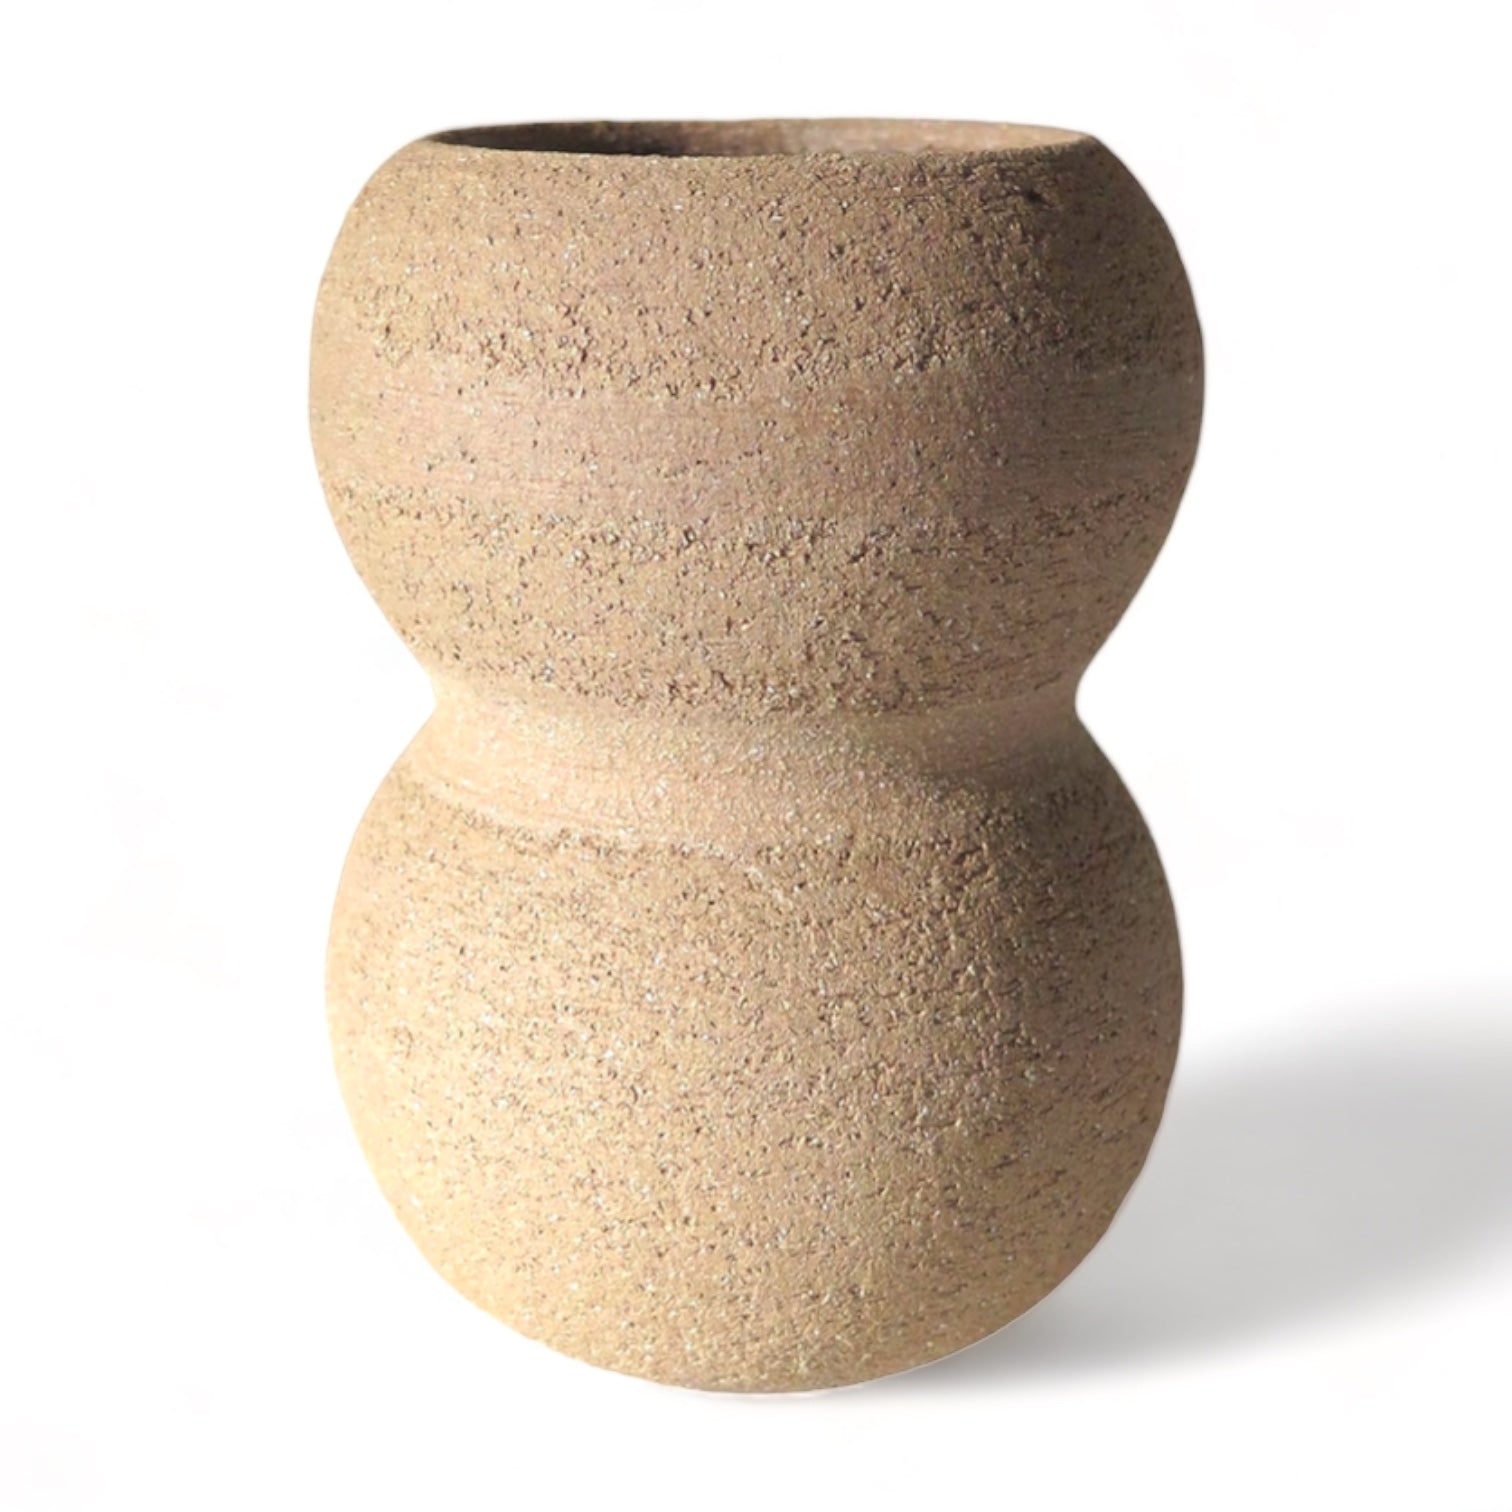 p11-ceramics-vase-bubble-corn.jpg p11-ceramics-vase-bubble-corn-1.jpg